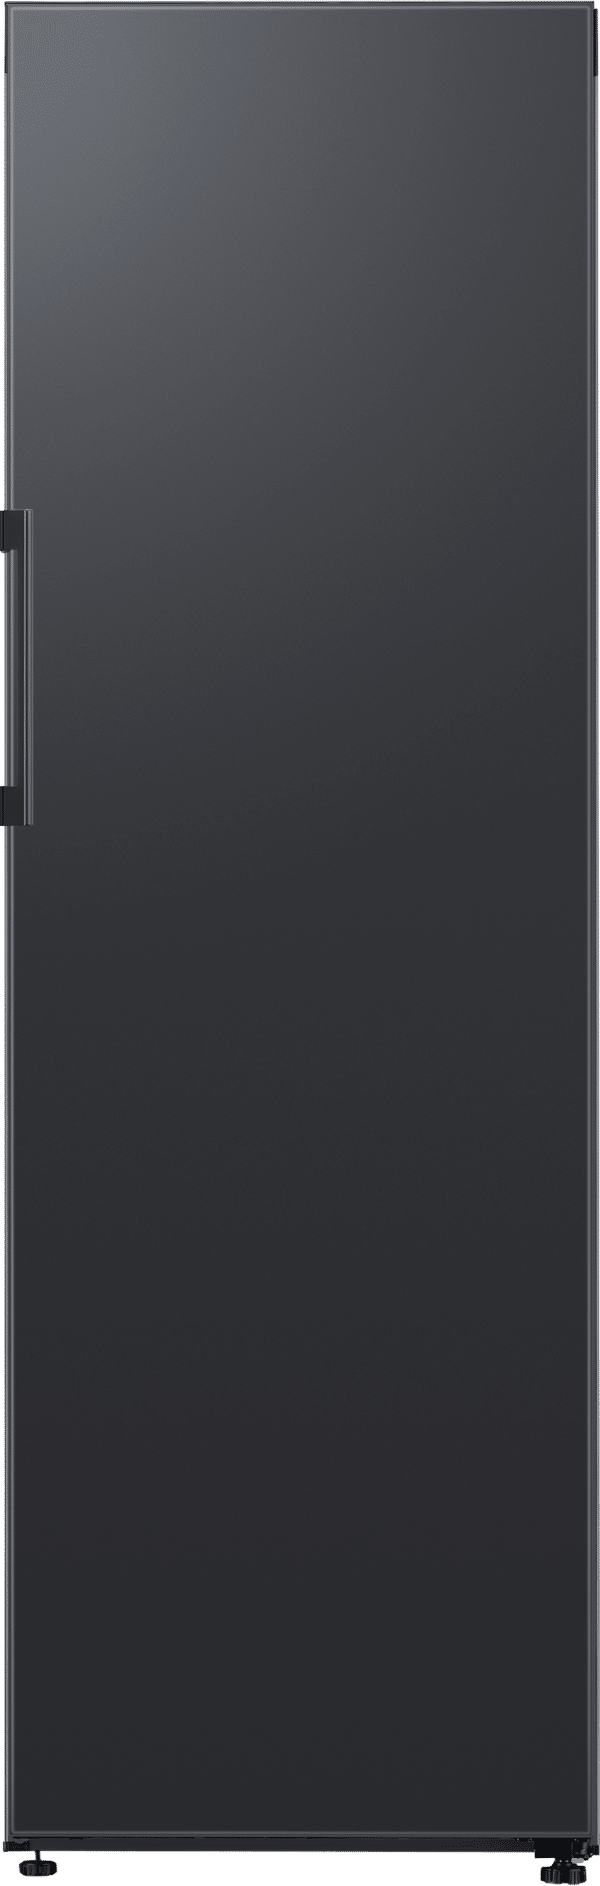 RR39B76C7VG/EG Kühlschrank ohne Gefrierfach